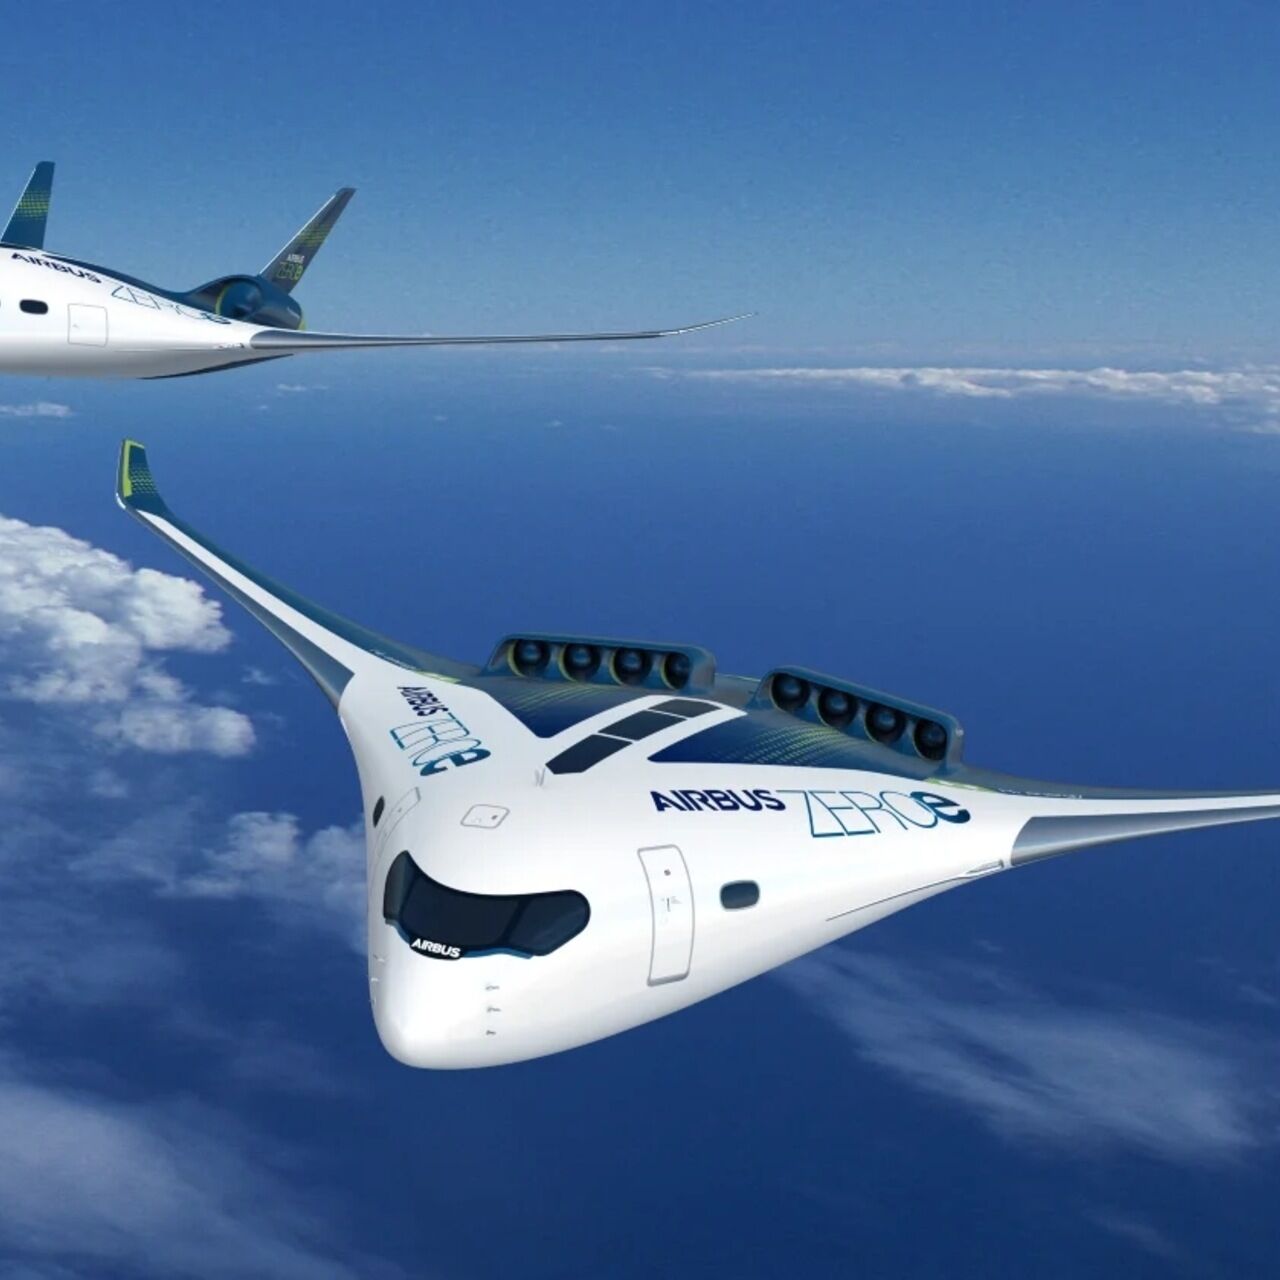 سر و صدا: پروژه ZERO شرکت ایرباس یکی از هواپیماهای بال مختلط پیشنهاد شده در سال های اخیر و موضوع مطالعه است.